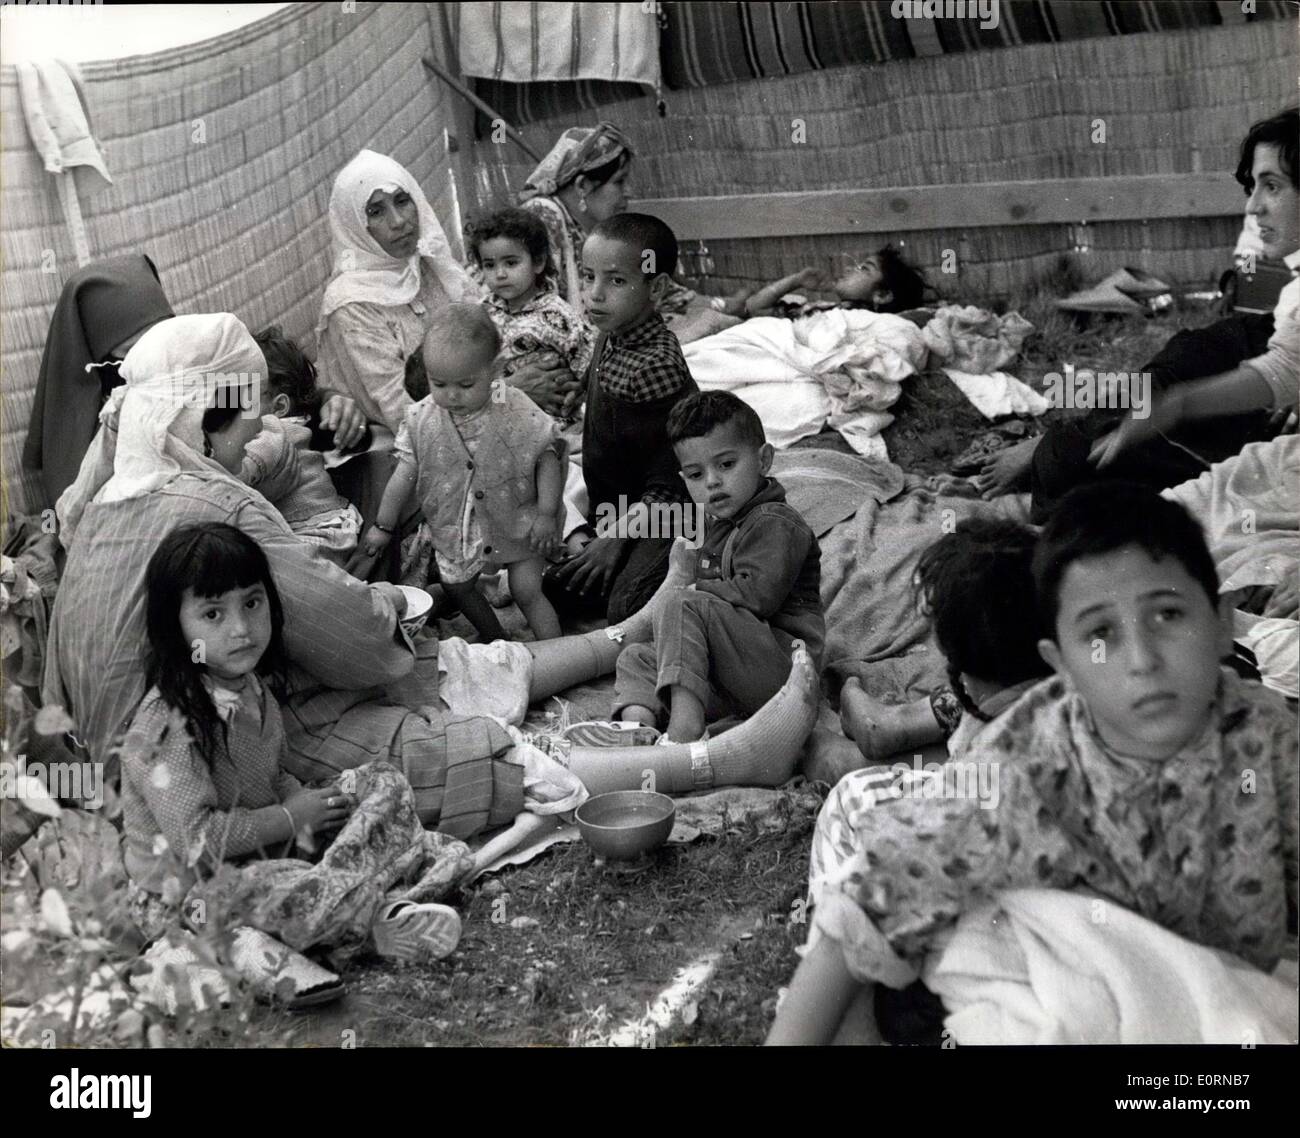 Mar. 04, 1960 - Après le tremblement de terre à Agadir les familles dans des logements temporaires. Photo montre les familles à faire eux-mêmes aussi confortable qu'ils peuvent, par l'accouplement d'abri temporaire pendant qu'ils attendent - hébergement - après le tremblement de terre à Agadir (Maroc) - qui a causé la mort de plus de 5 000 personnes. Banque D'Images